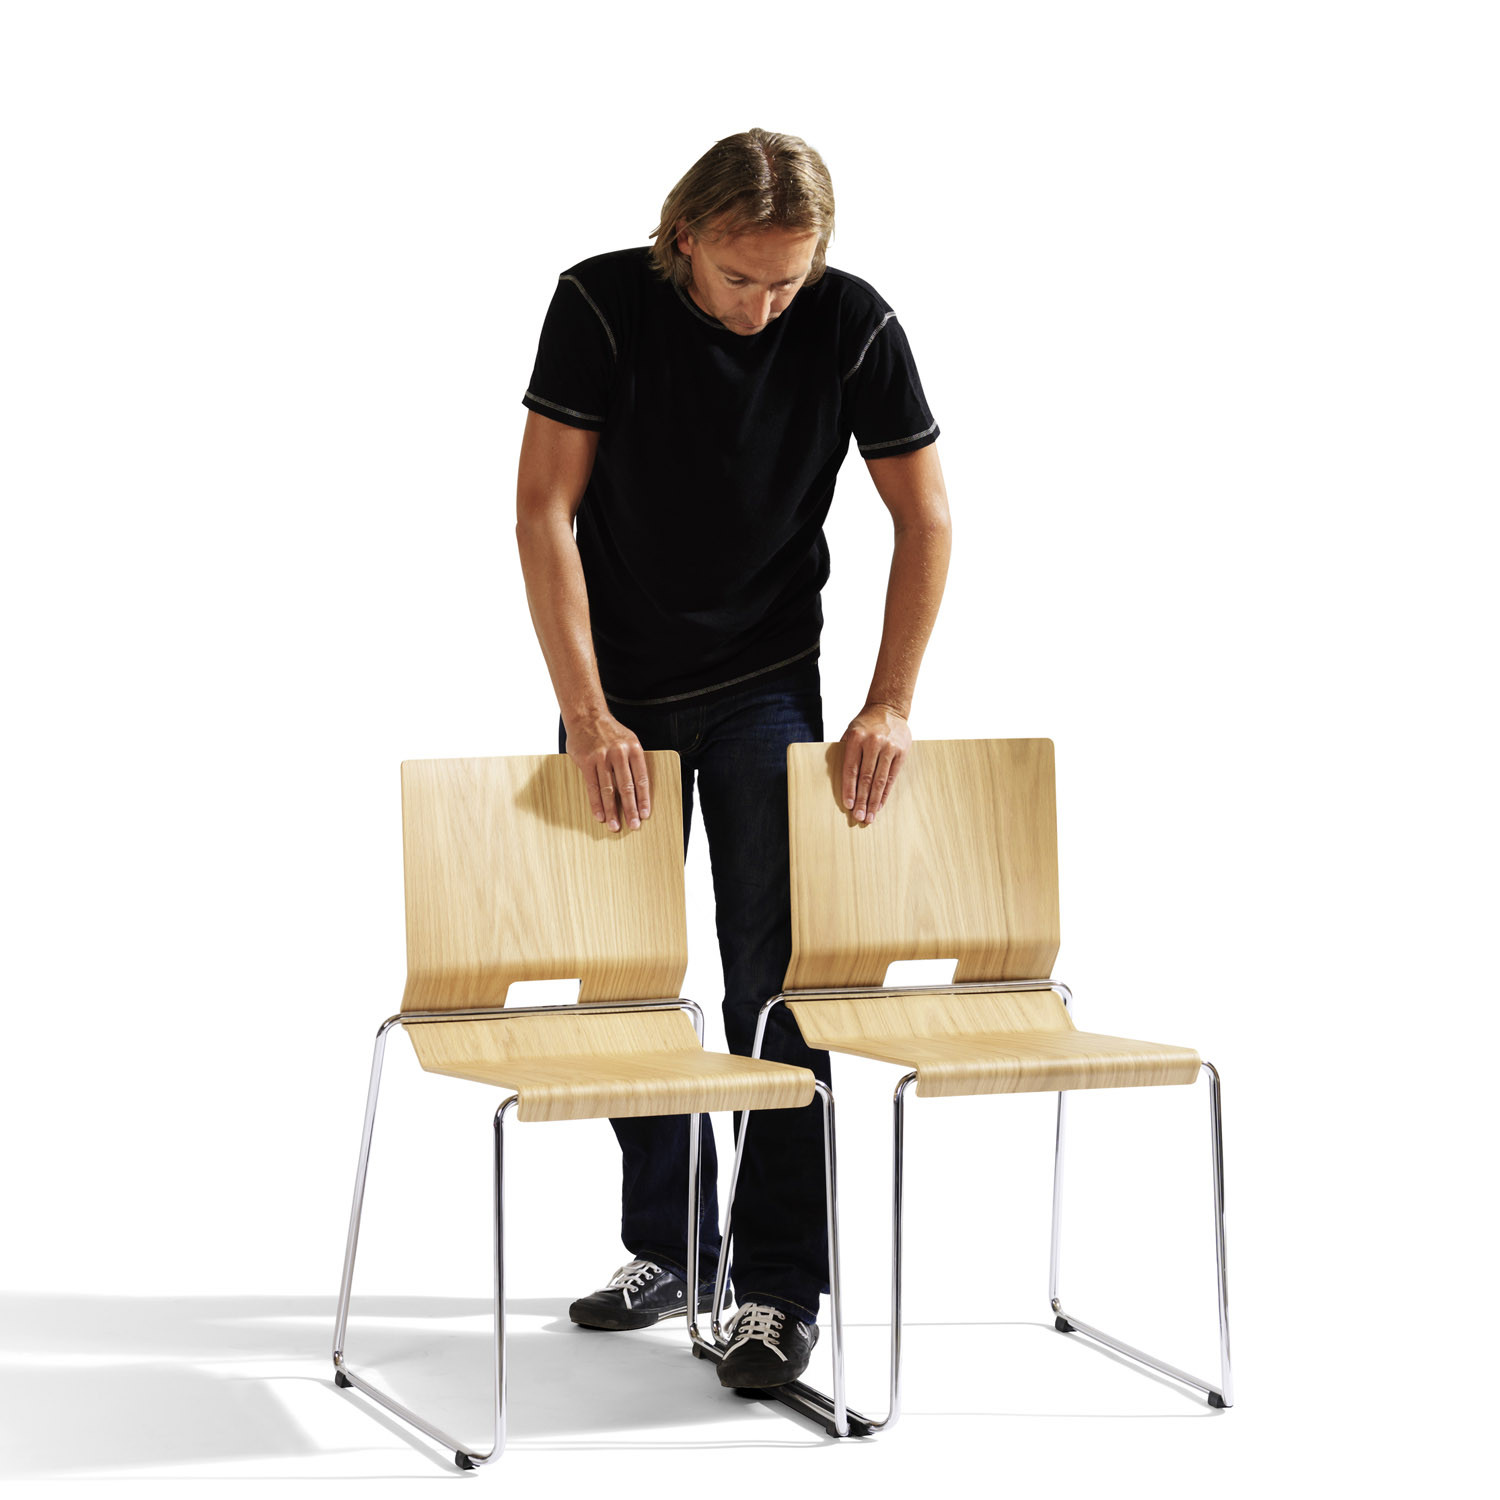 Chair O69 by Fredrik Mattson